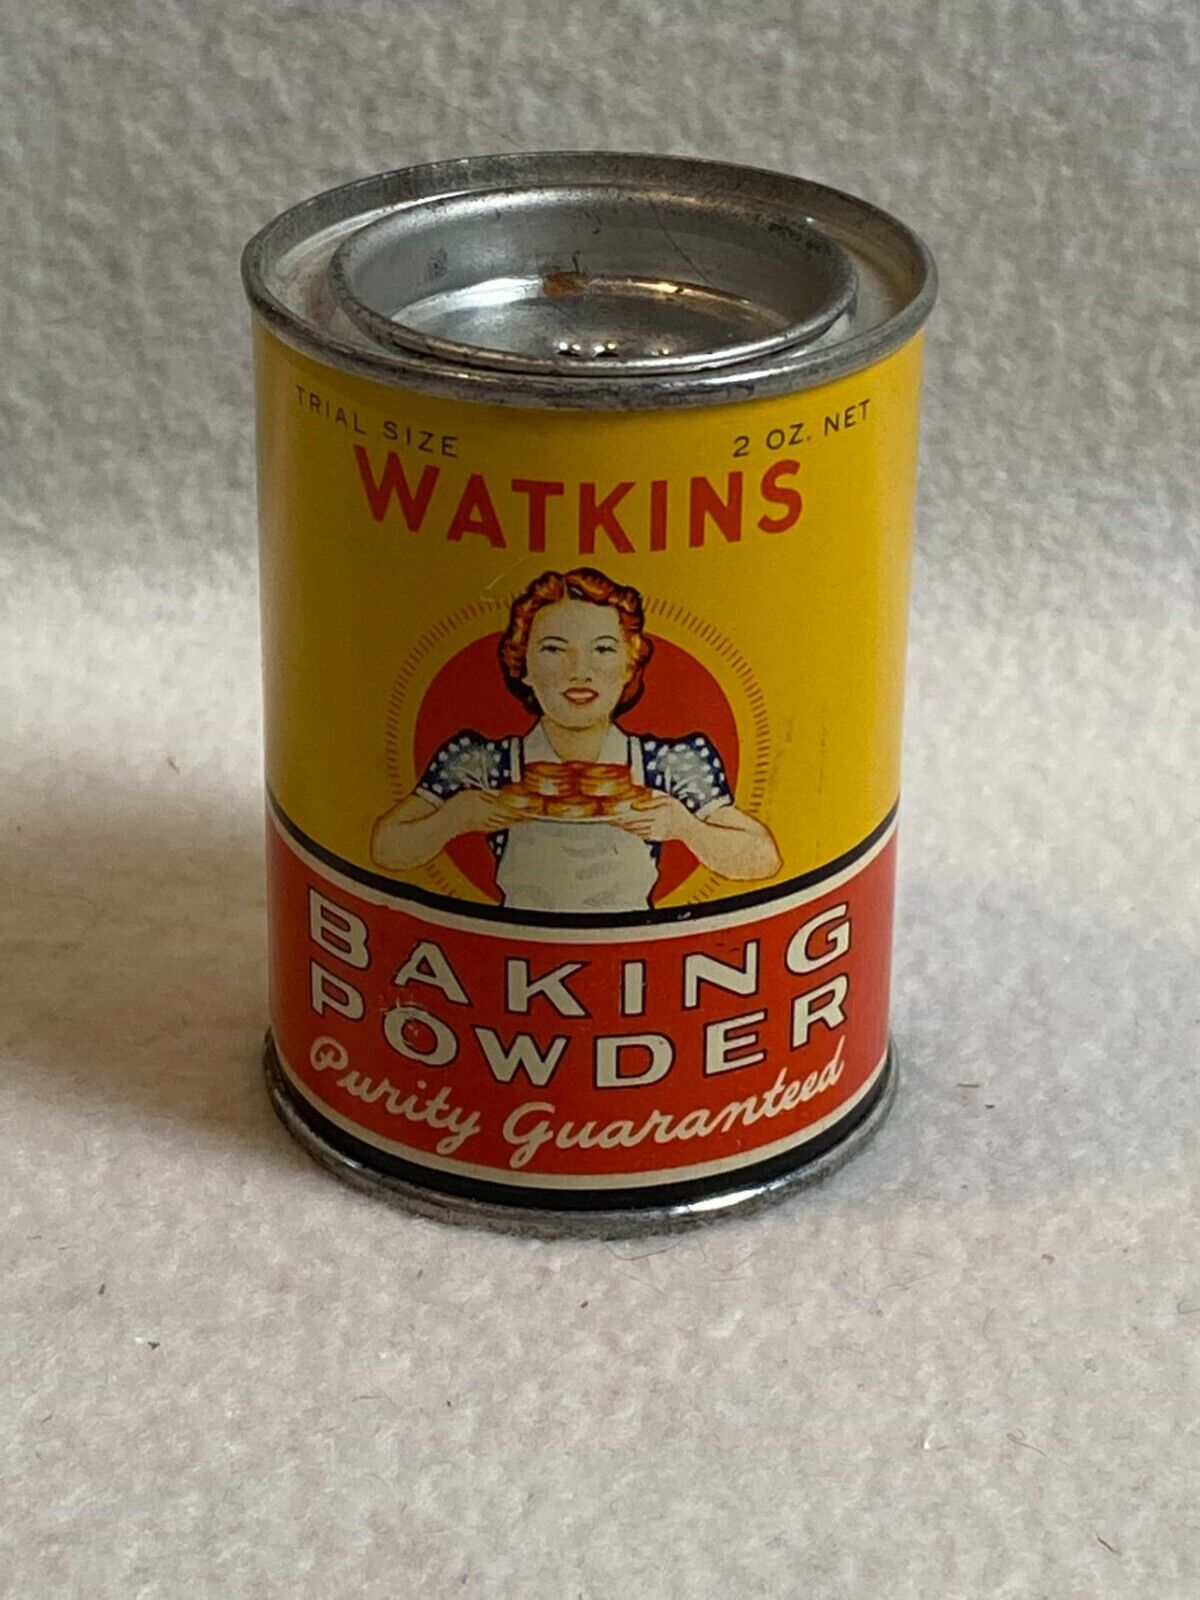 Vintage J.R. Watkins Trial Size Baking Powder Tin for Display